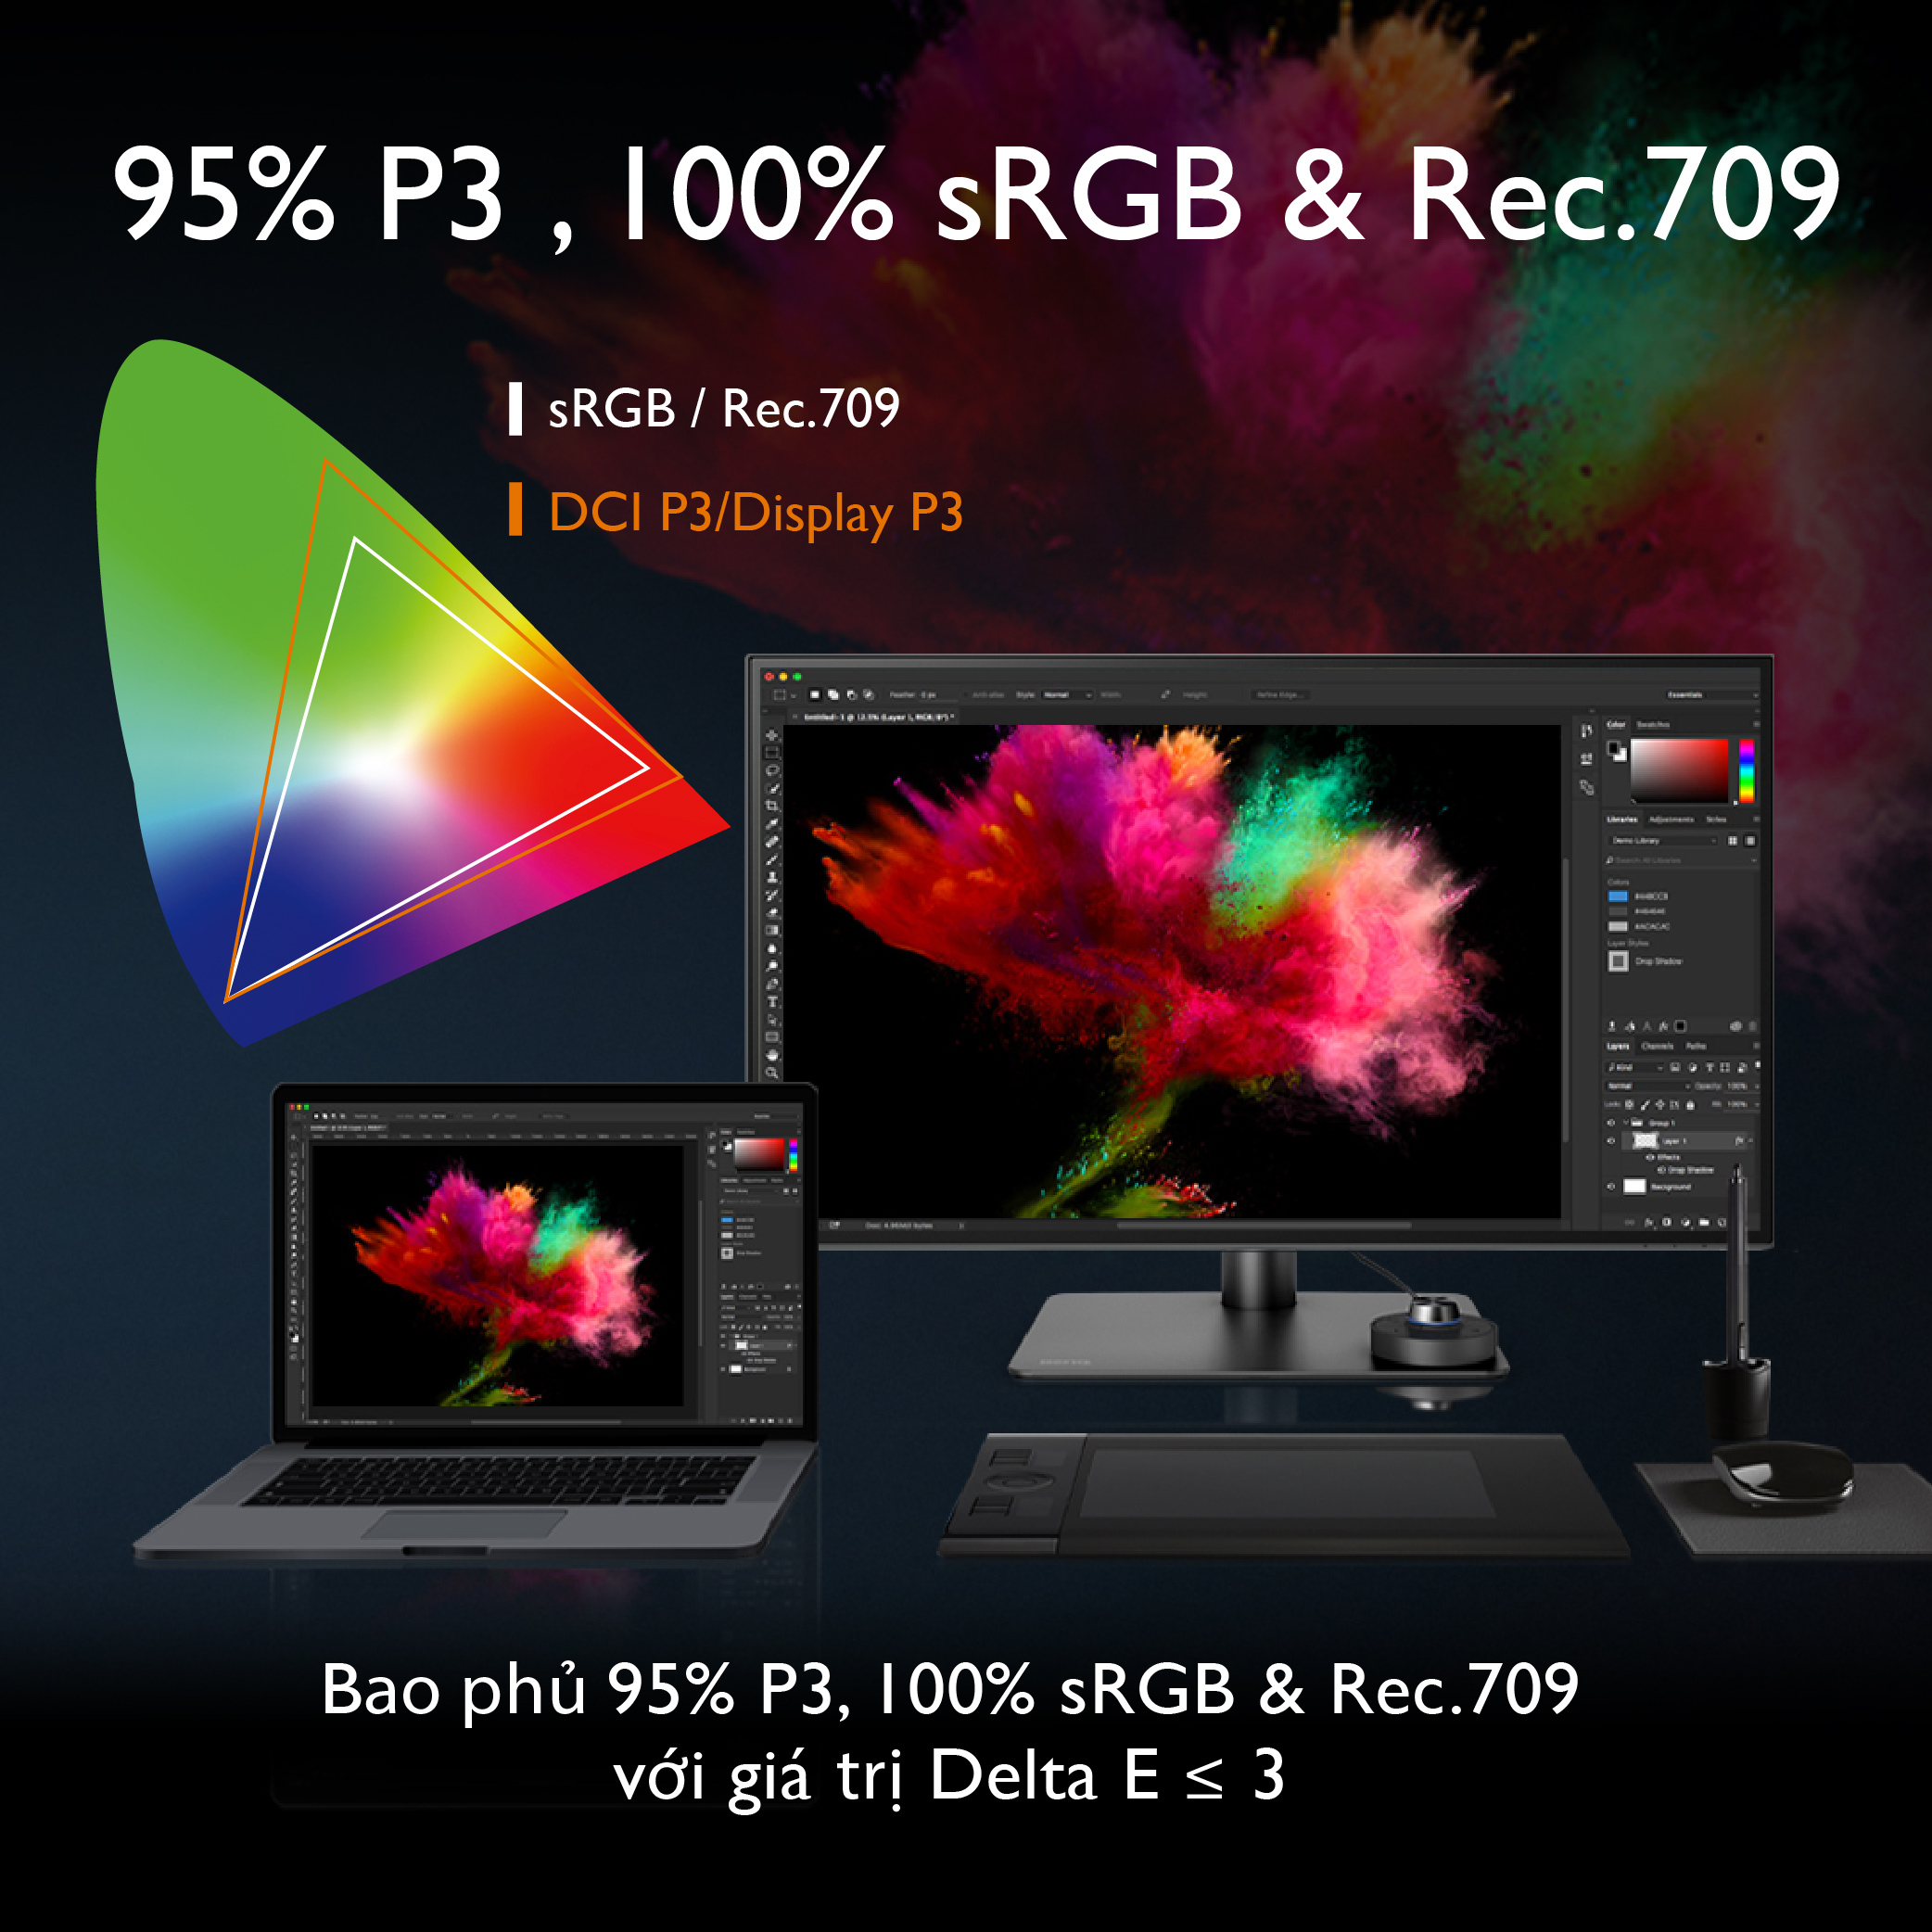 [MỚI] Màn hình đồ họa BenQ PD2725U 27 inch 4K UHD IPS 100% sRGB 95% P3 Thunderbolt 3 hỗ trợ...